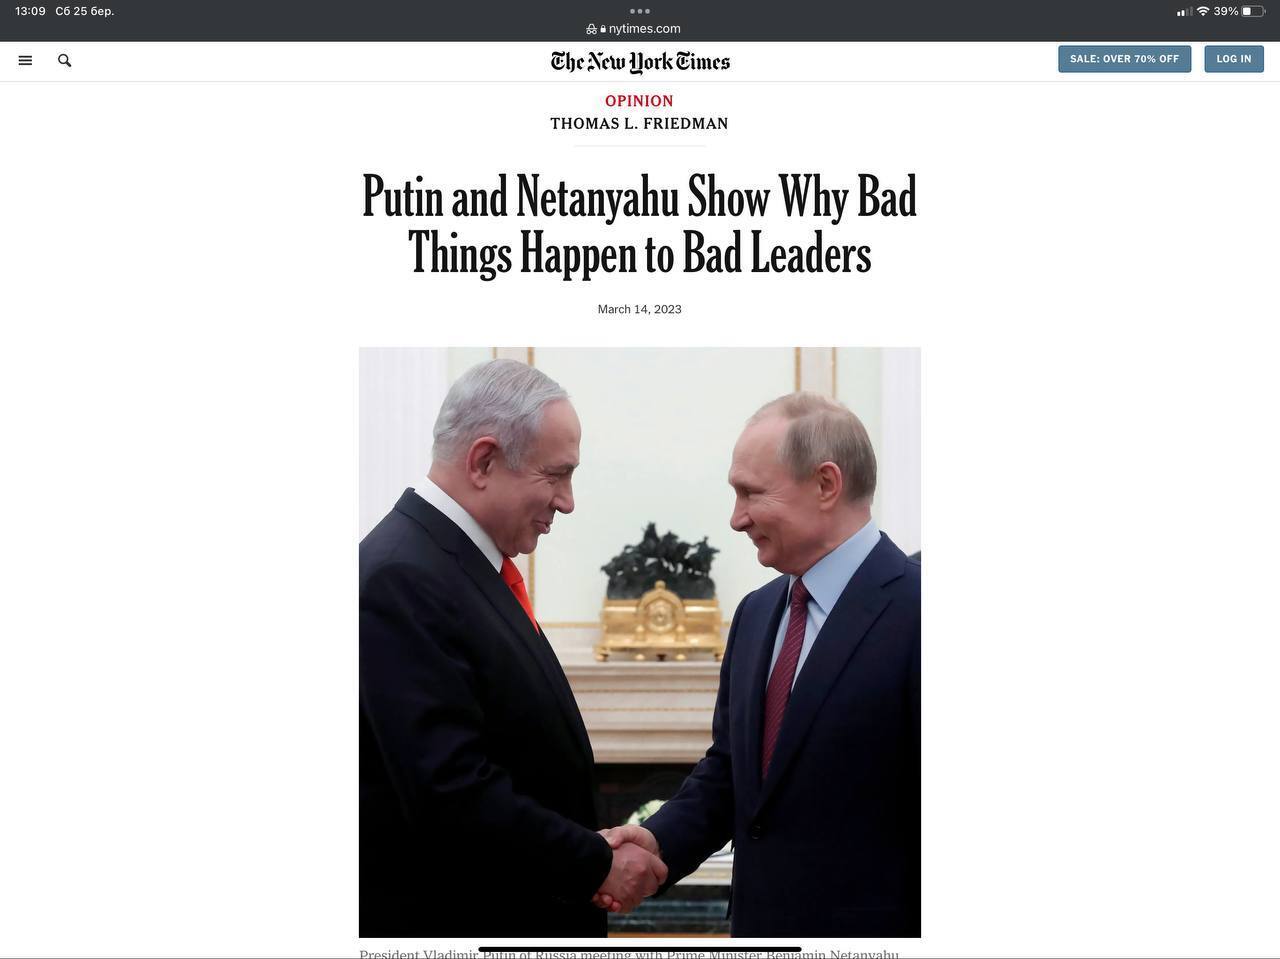 Биньямин (Биби) Нетаньяху задумал судебный переворот. Его сравнивают с Путиным